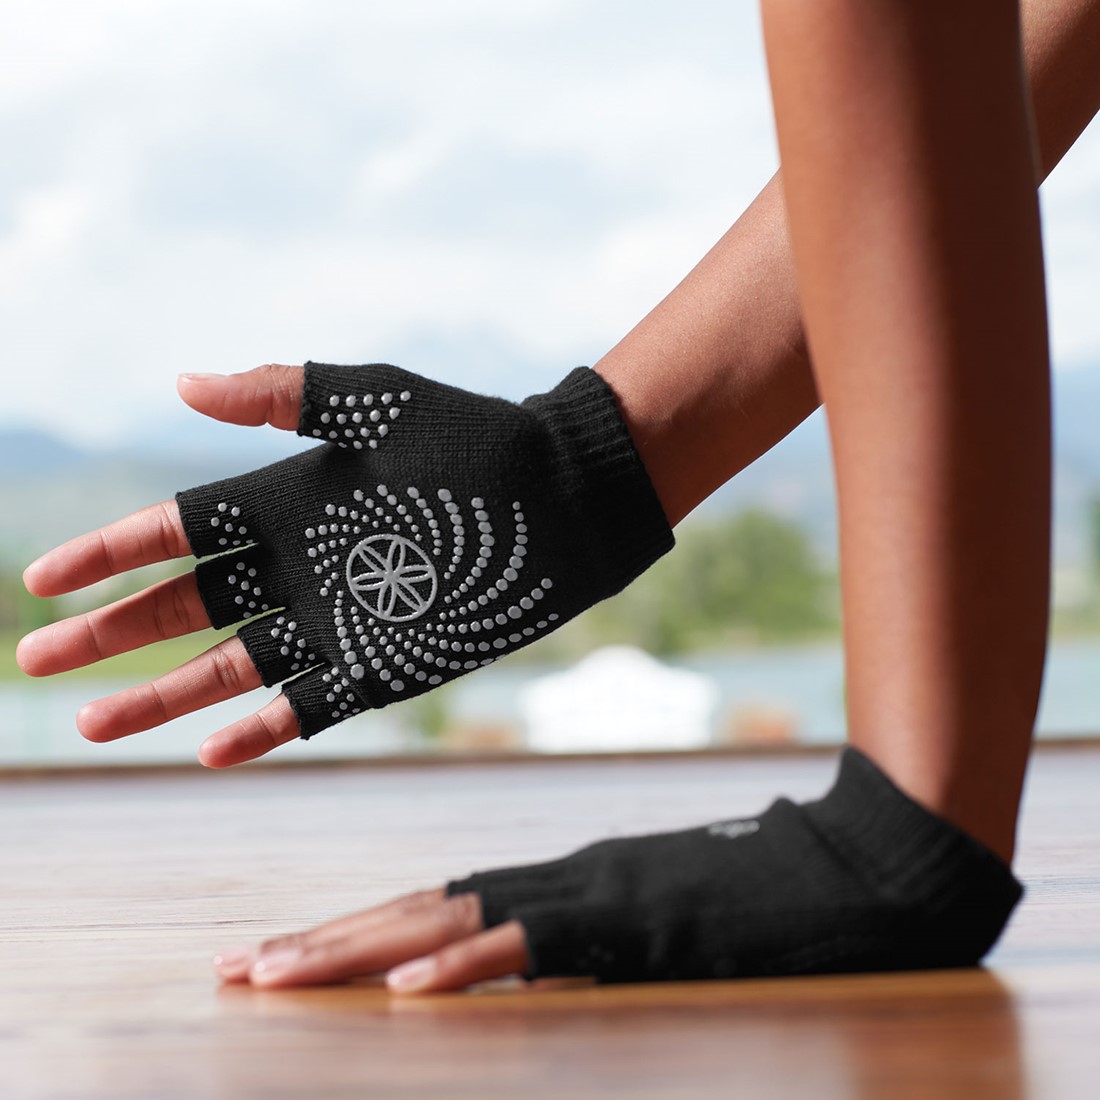 biologie Erge, ernstige barrière Gaiam Grippy Yoga Gloves - Anti-slip Handschoenen - Zwart / Grijs |  Fitwinkel.nl